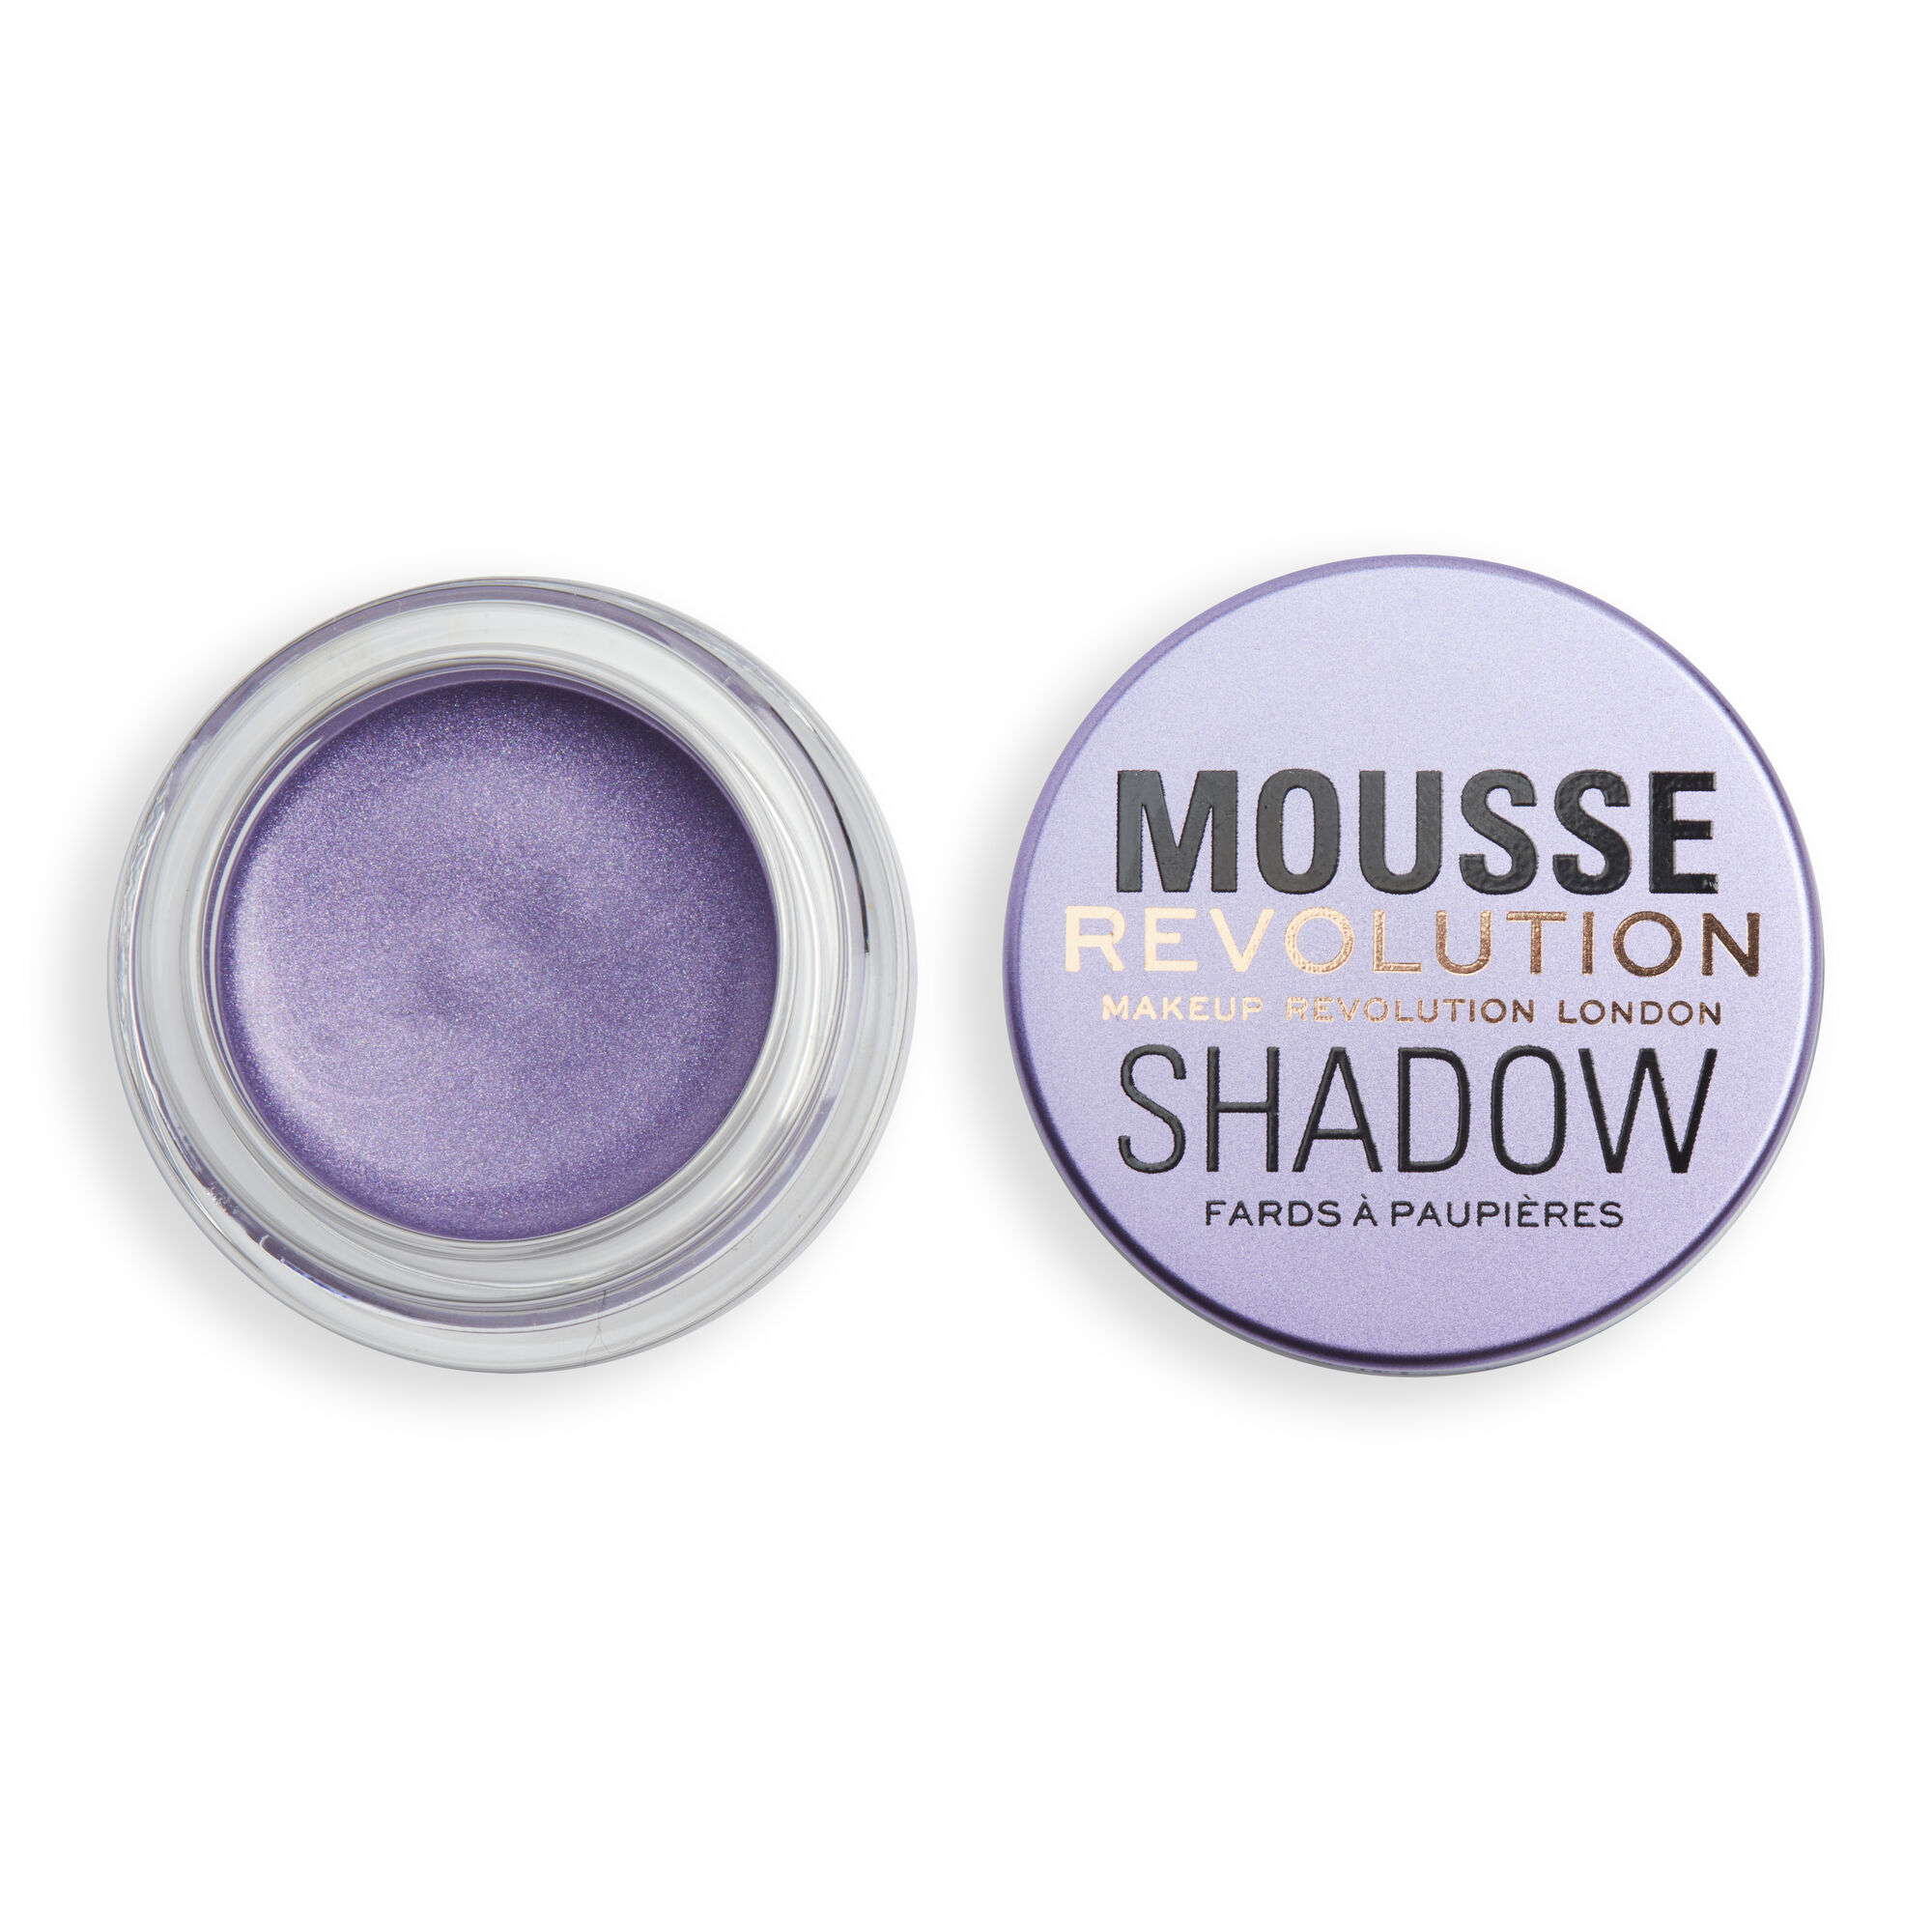 Тени Revolution Makeup кремовые для век Mousse Cream Eyeshadow, Lilac lasting mousse eyeshadow стойкие муссовые тени для век